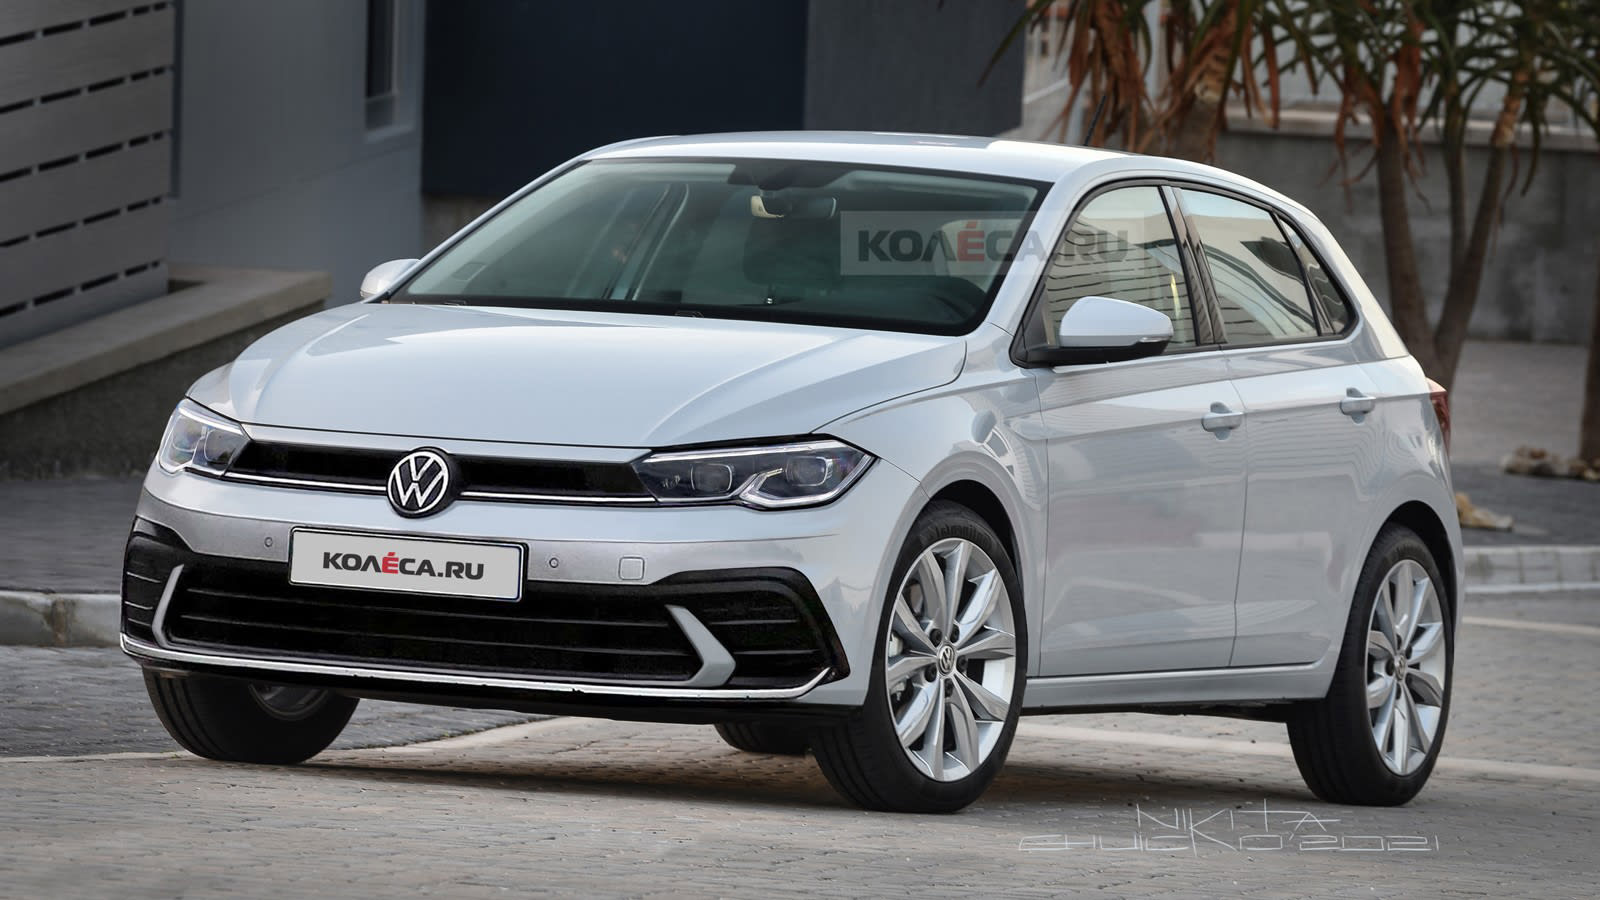 Vriendelijkheid Bij omverwerping 2022 Volkswagen Polo and T-Roc facelifts: Australian launches due in 2022,  including T-Roc R – UPDATE - Drive